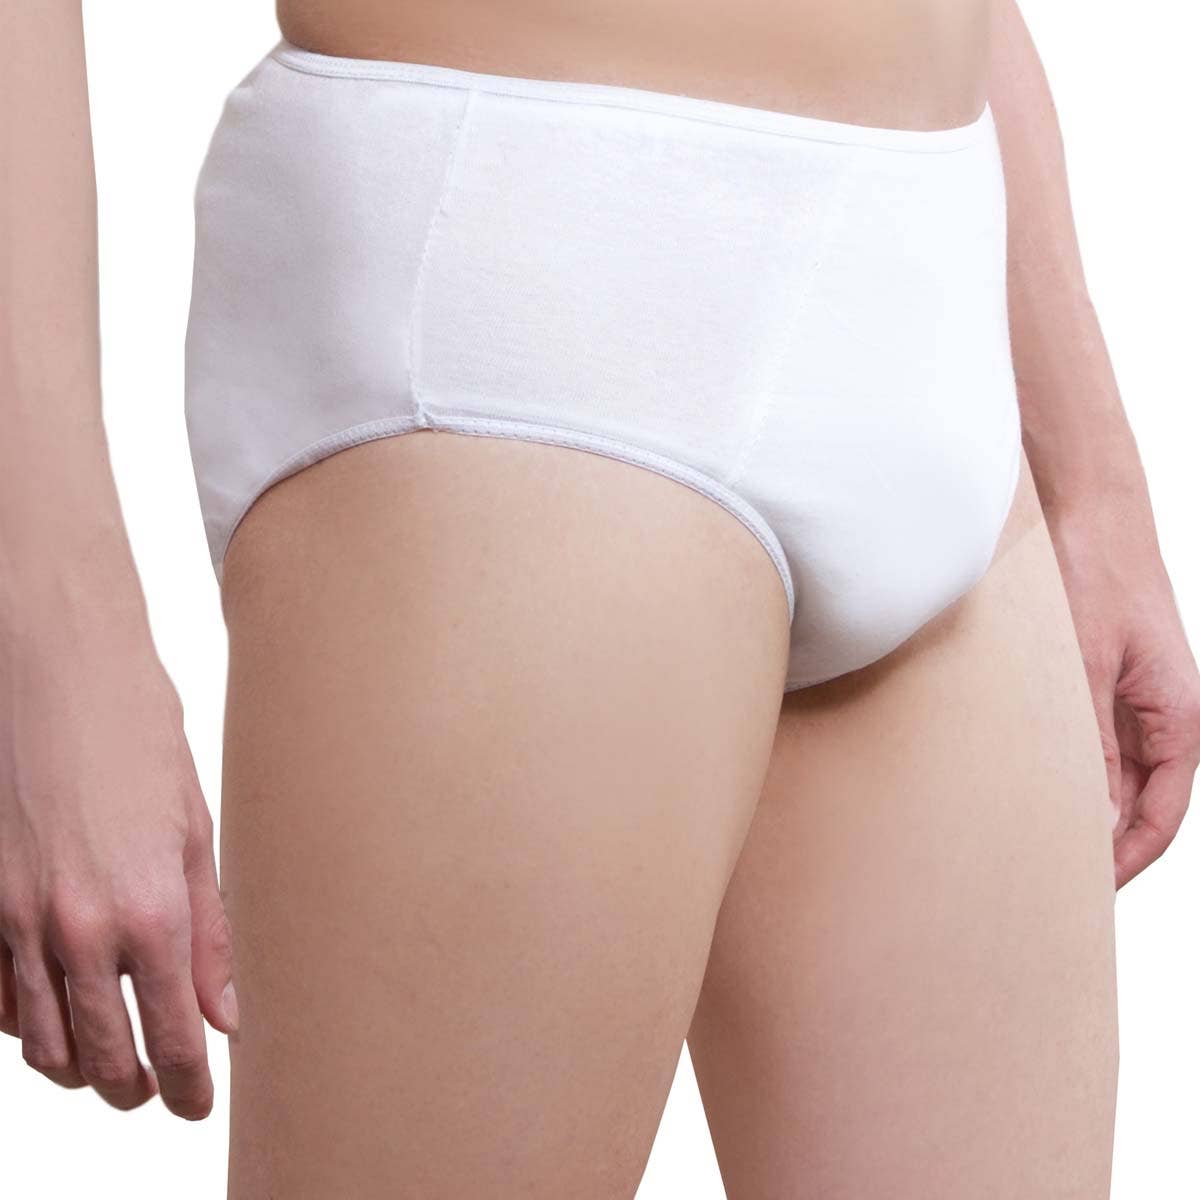 On Sale- One-Wear Disposable white cotton underwear for men. Travel briefs 5pc